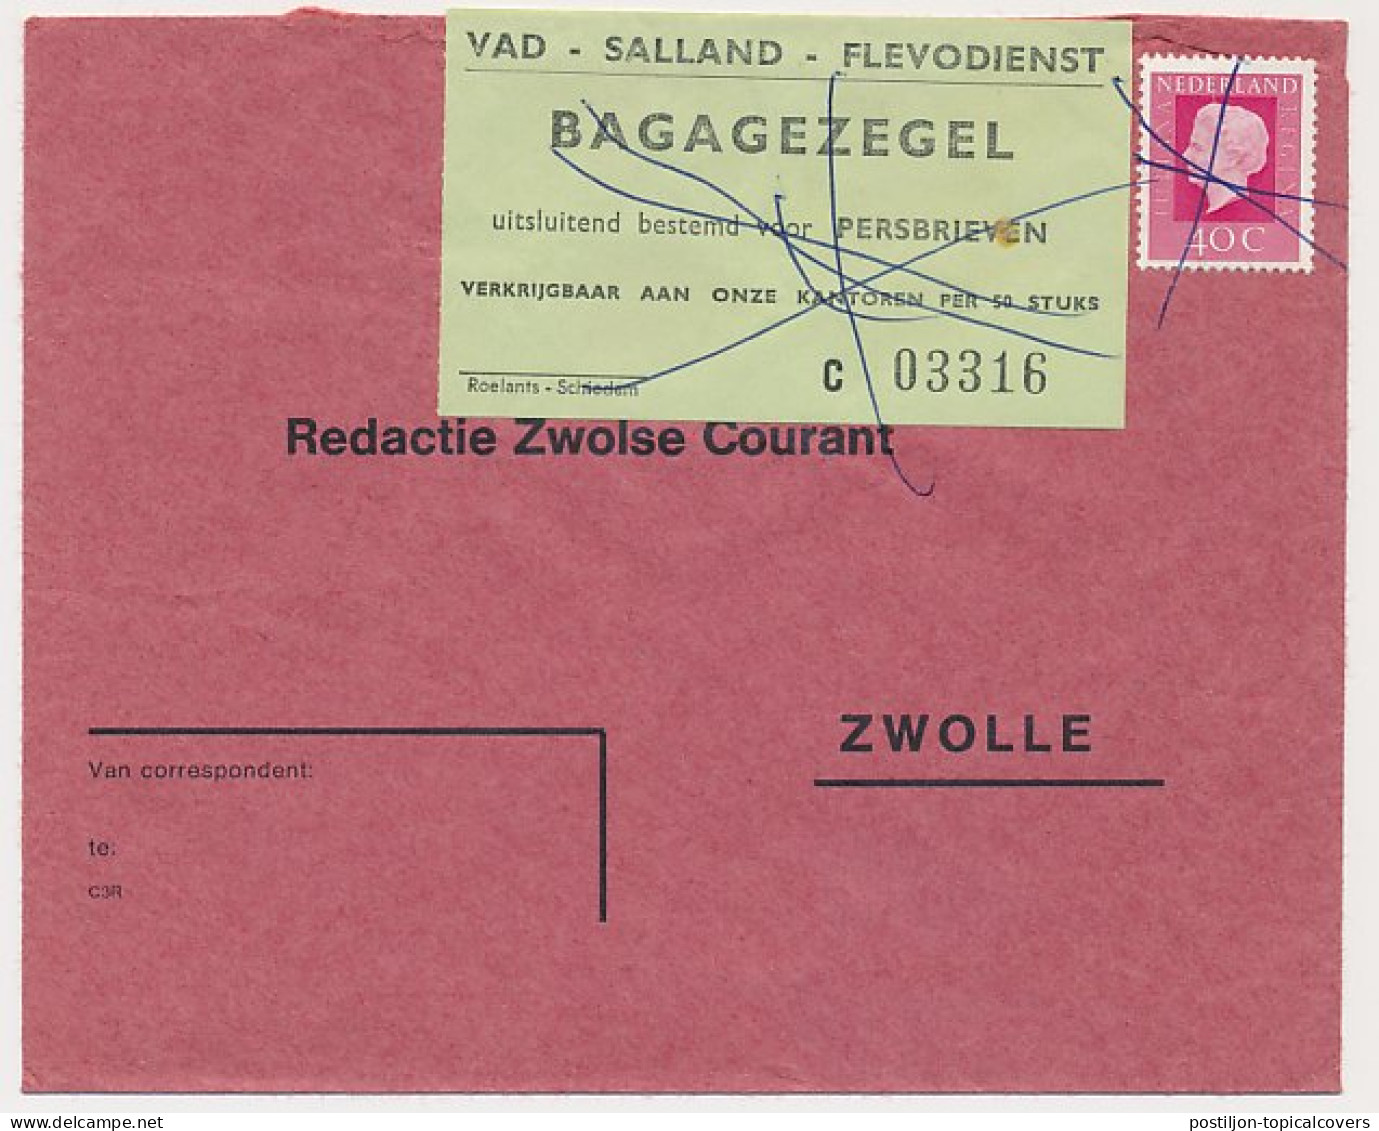 Zwolle - VAD Bagagezegel Voor Persbrieven - Unclassified